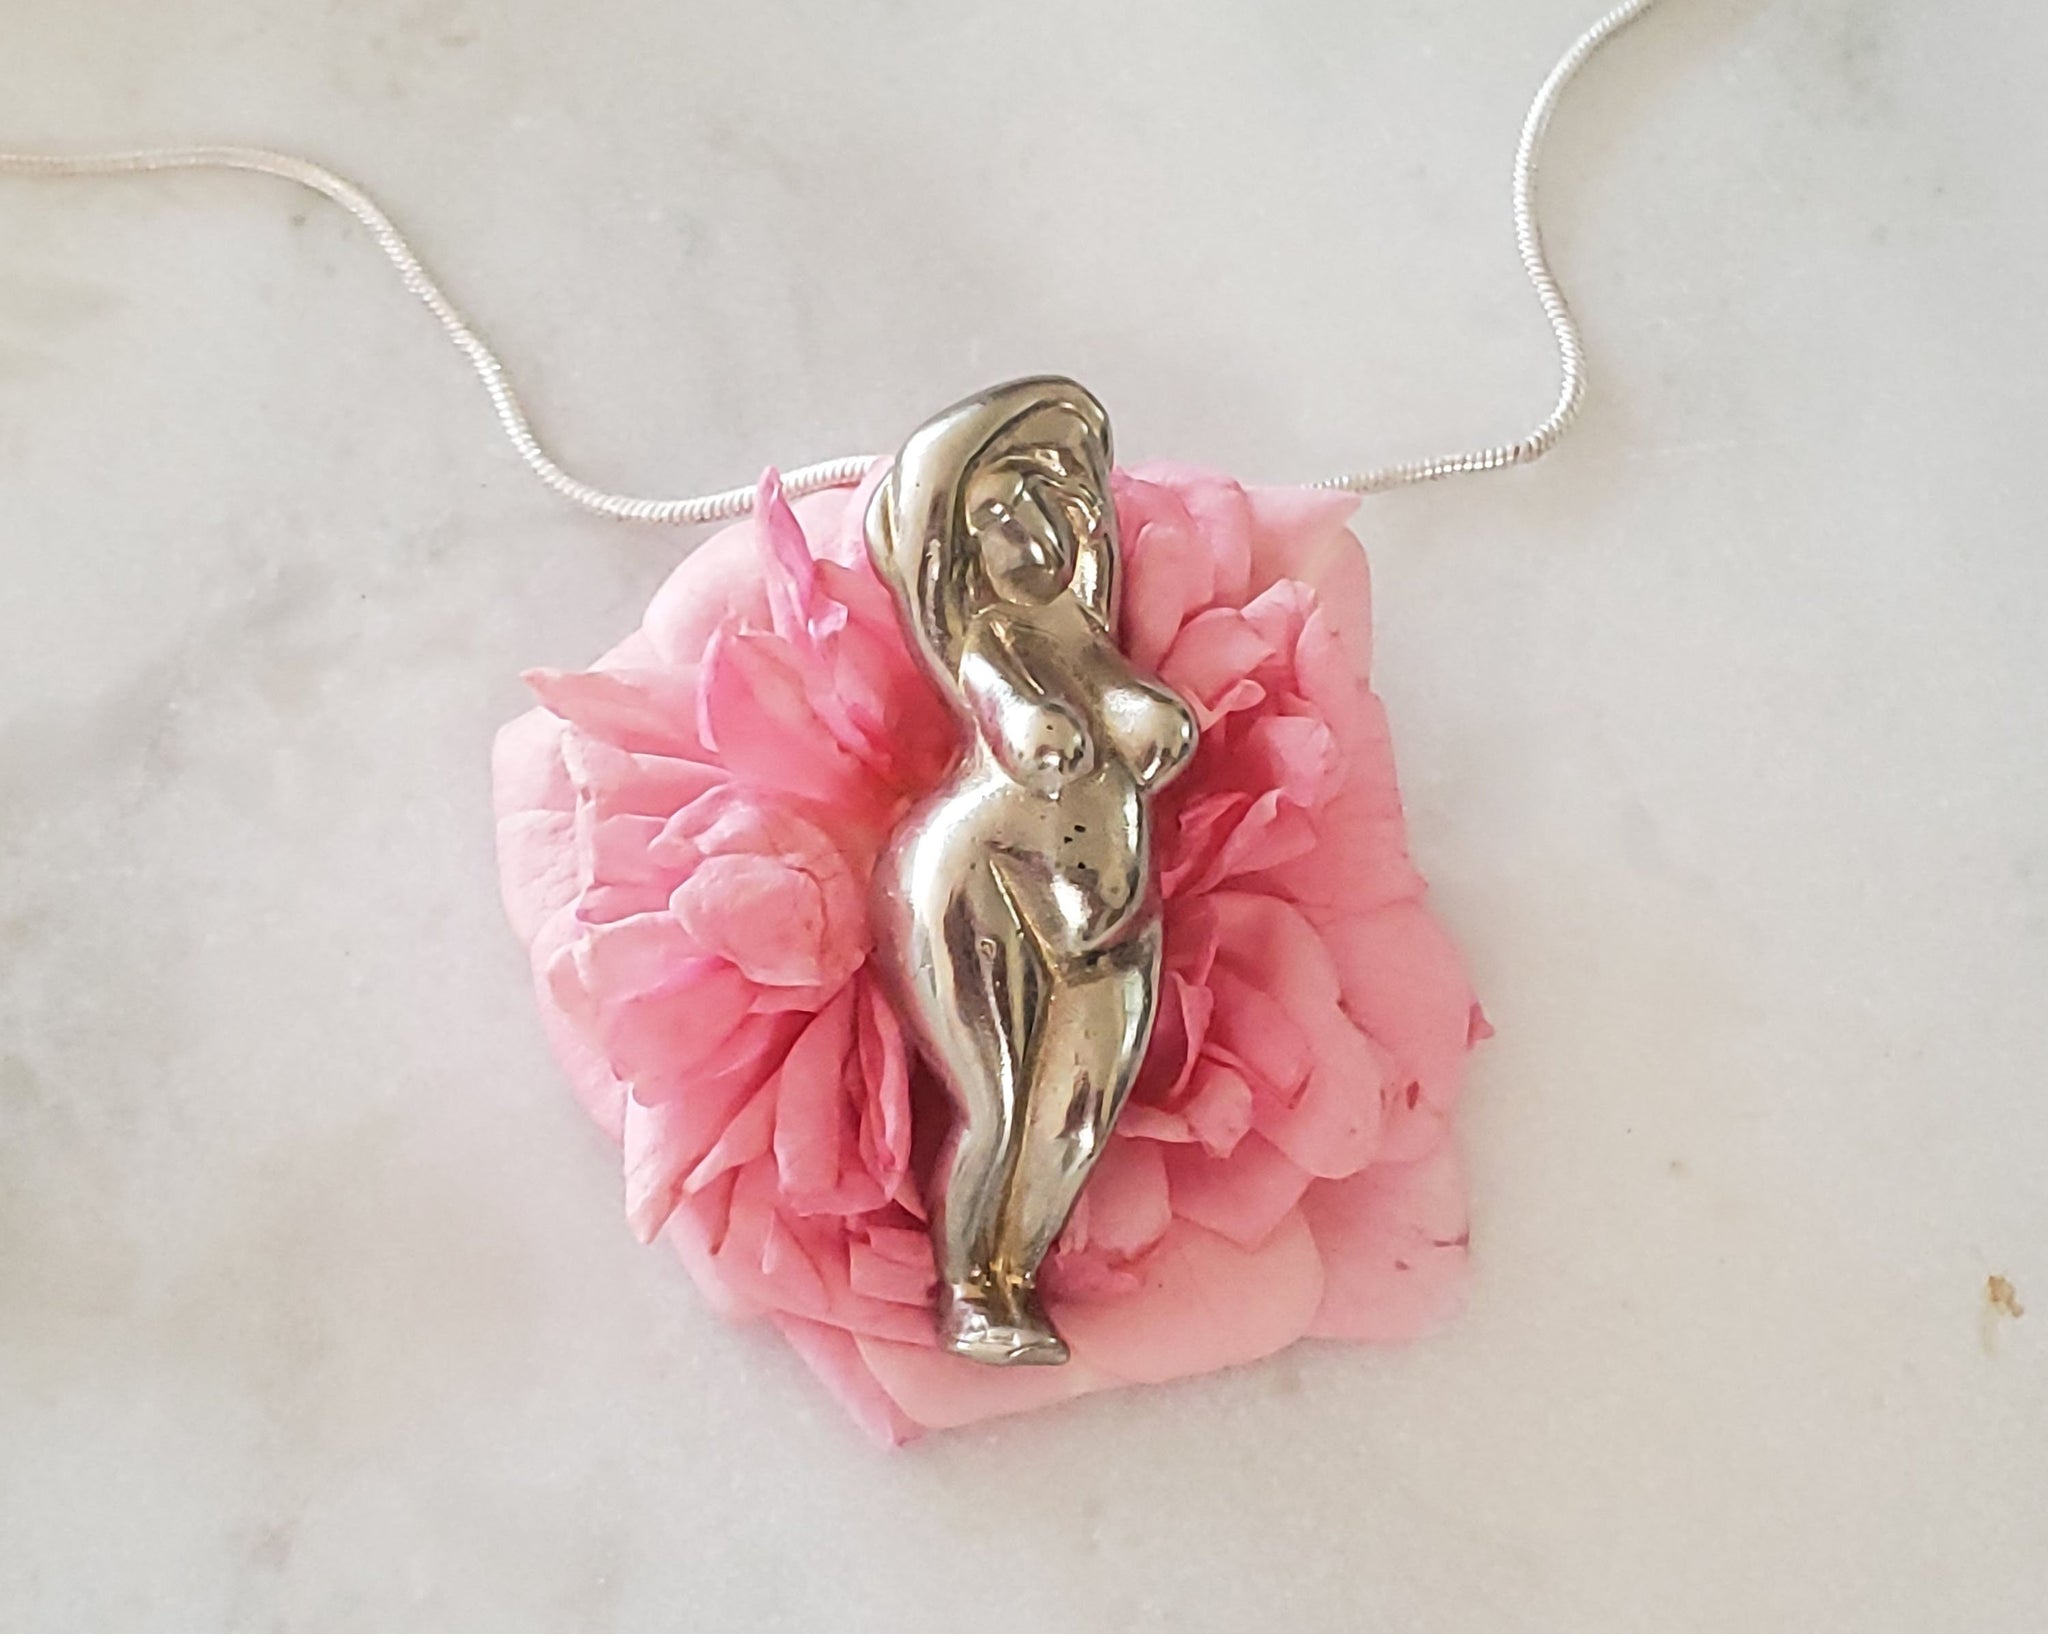 Goddess keychain/Keyring, Pink glitter